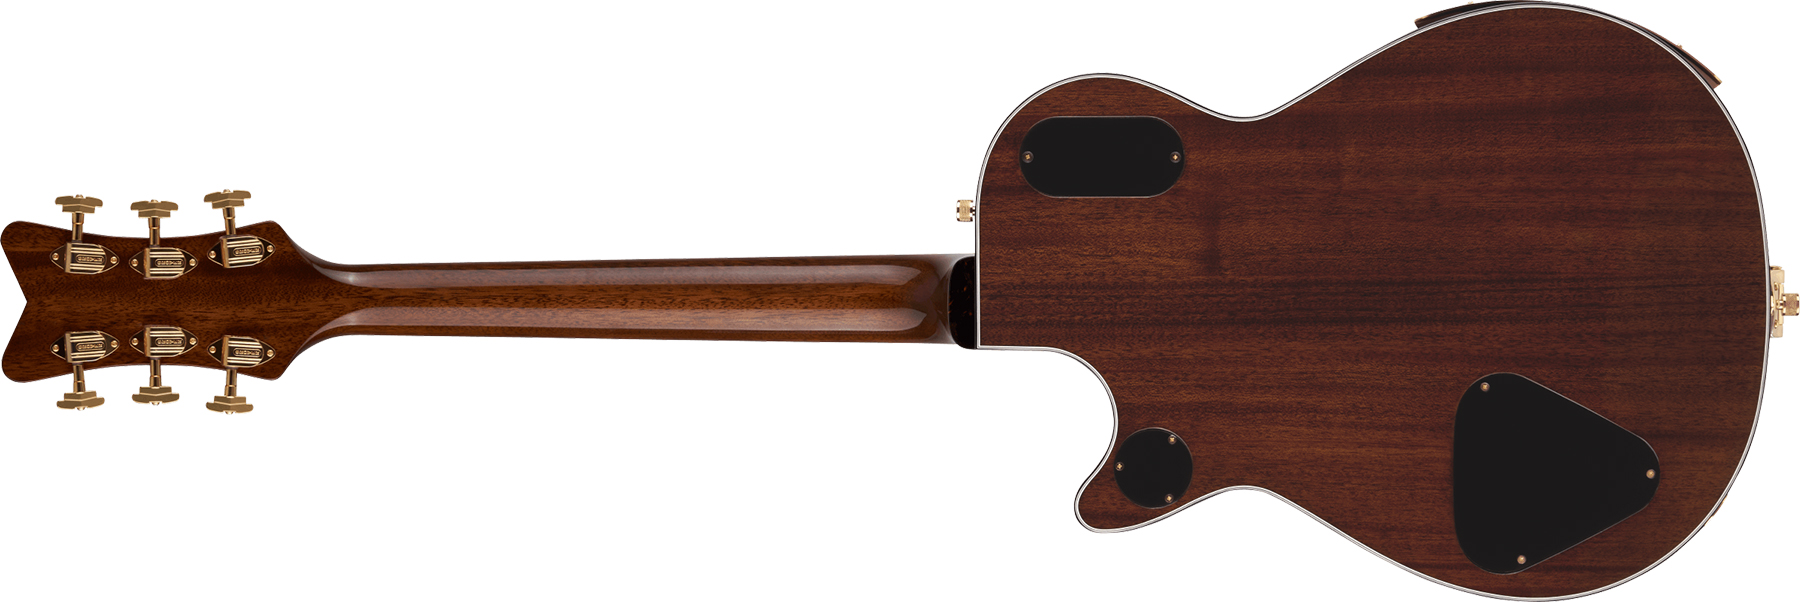 Gretsch G6134t-ltd Penguin Koa Bigsby Pro Jap 2h Trem Eb - Natural - Guitare Électrique Single Cut - Variation 1